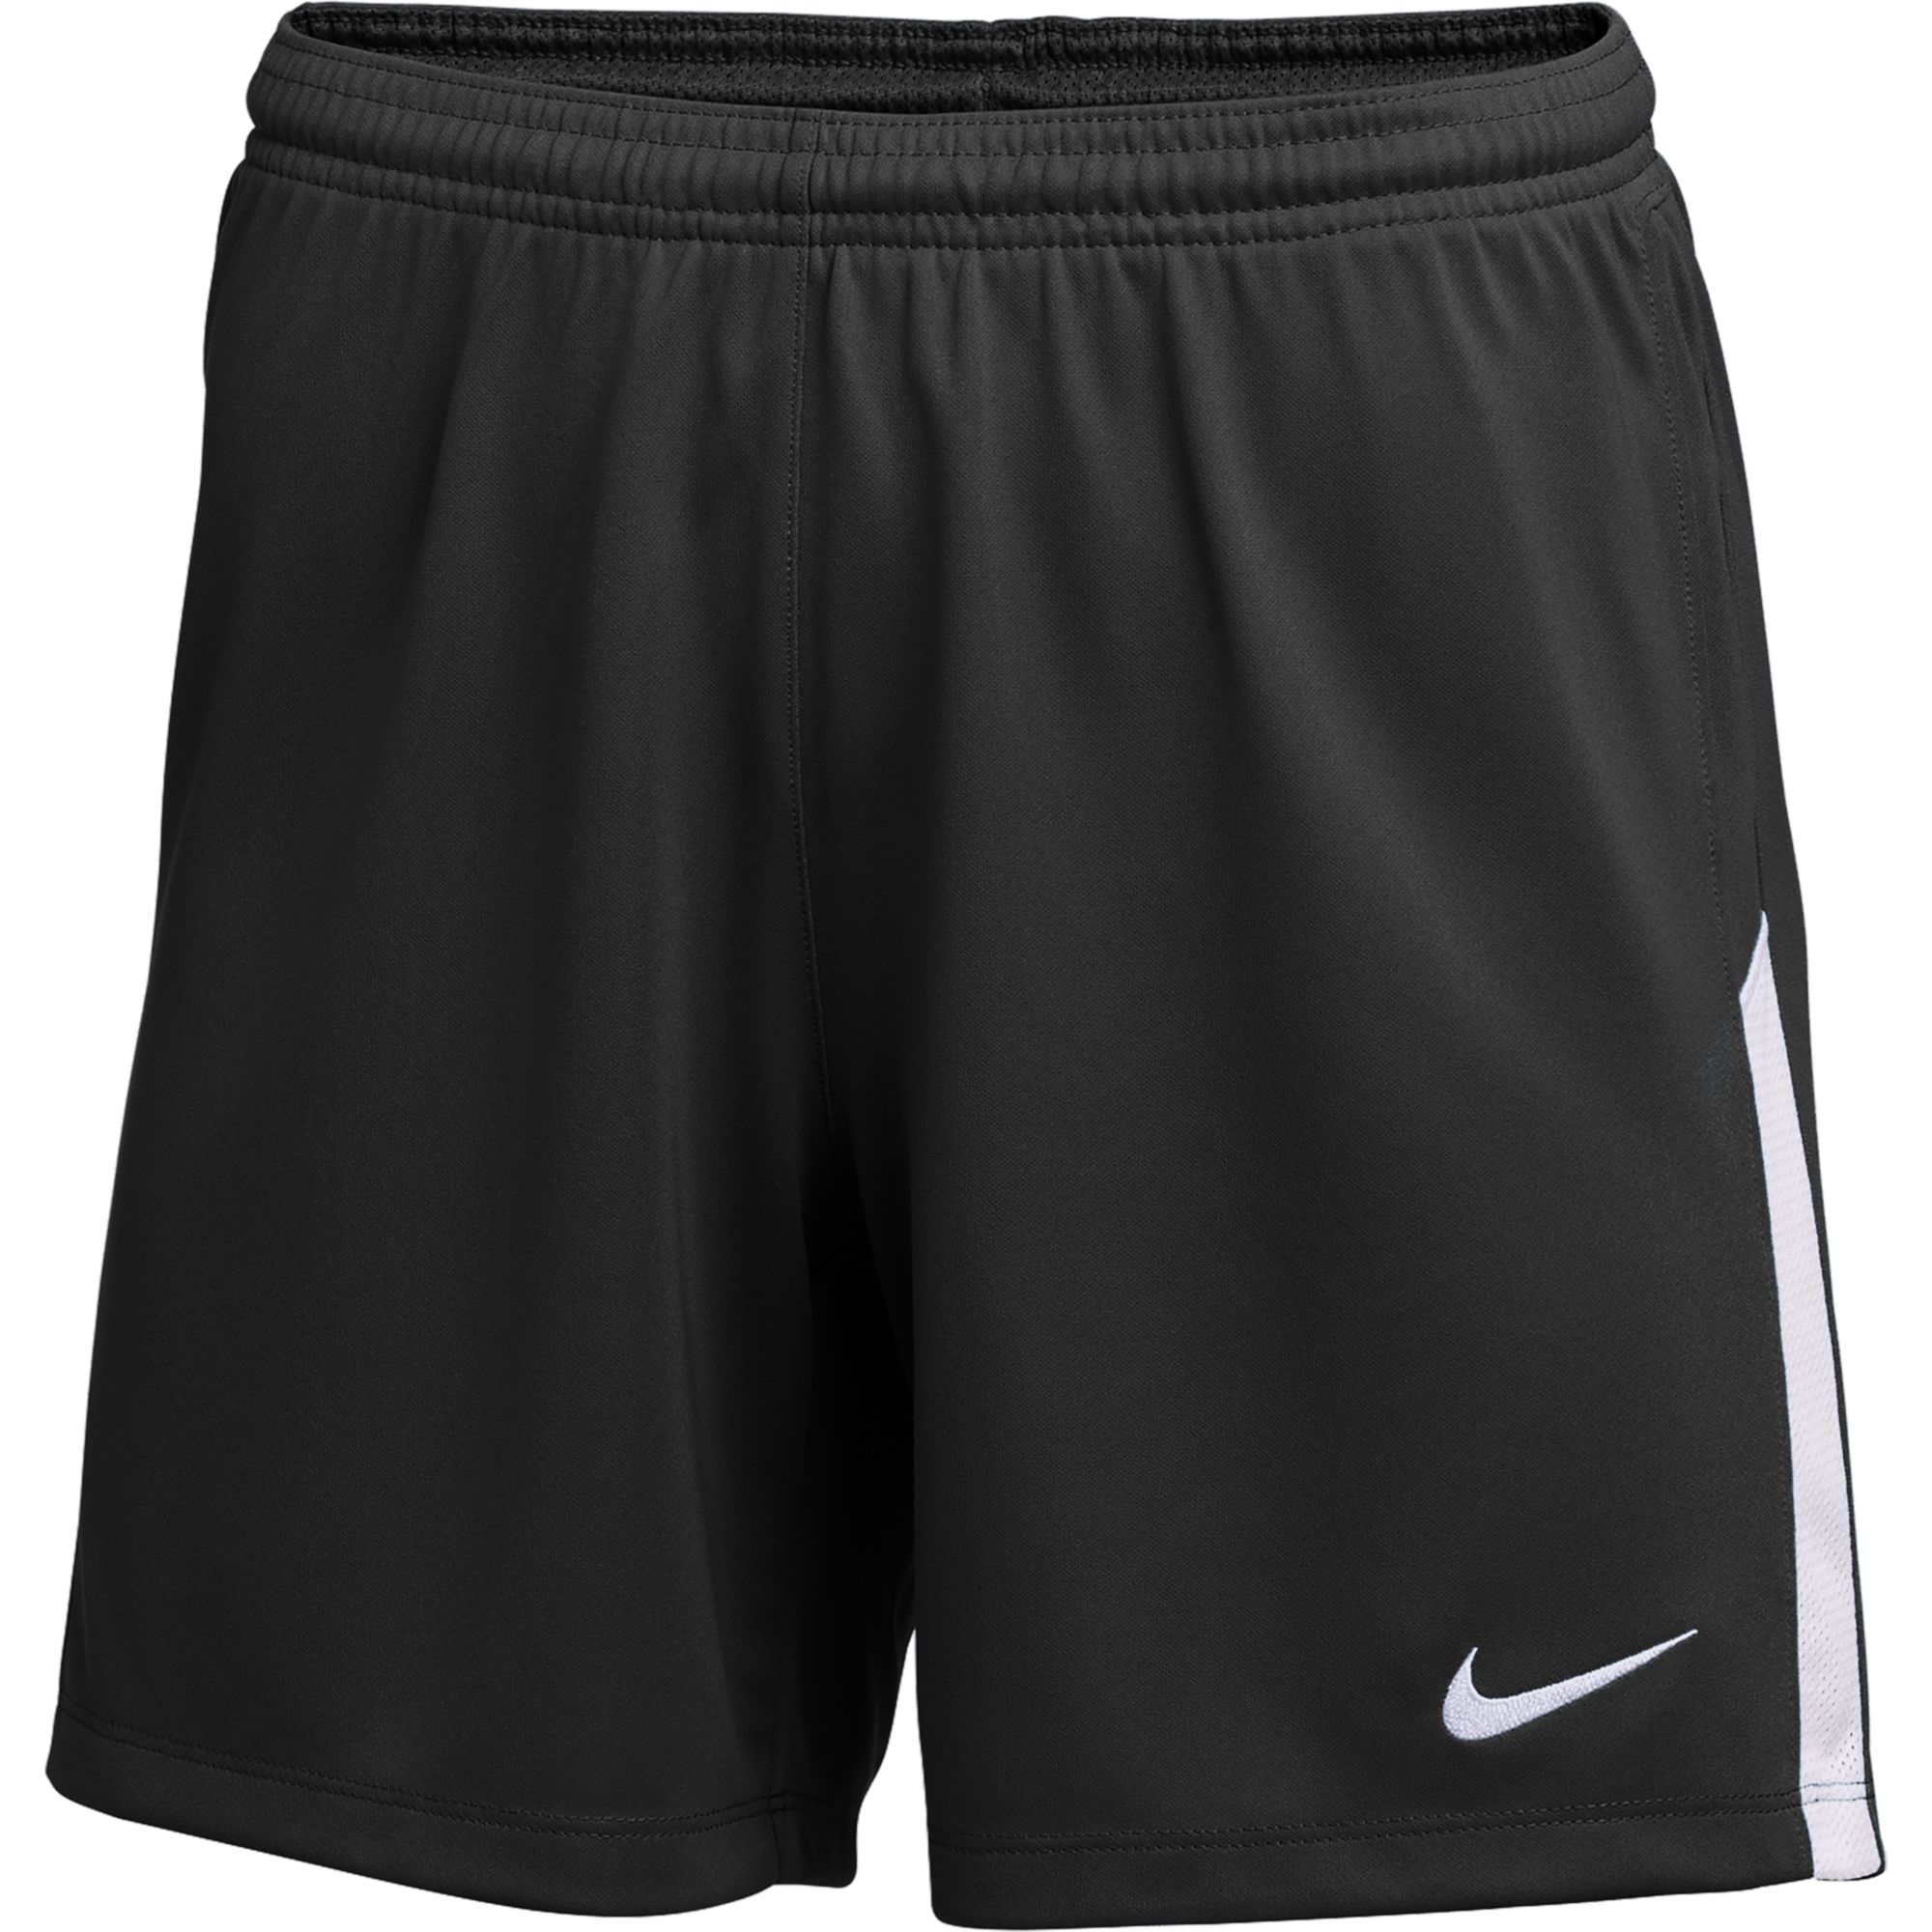 Stefans Soccer - Wisconsin - Nike Women's Dri-FIT Knit II Soccer Shorts -  Black / White